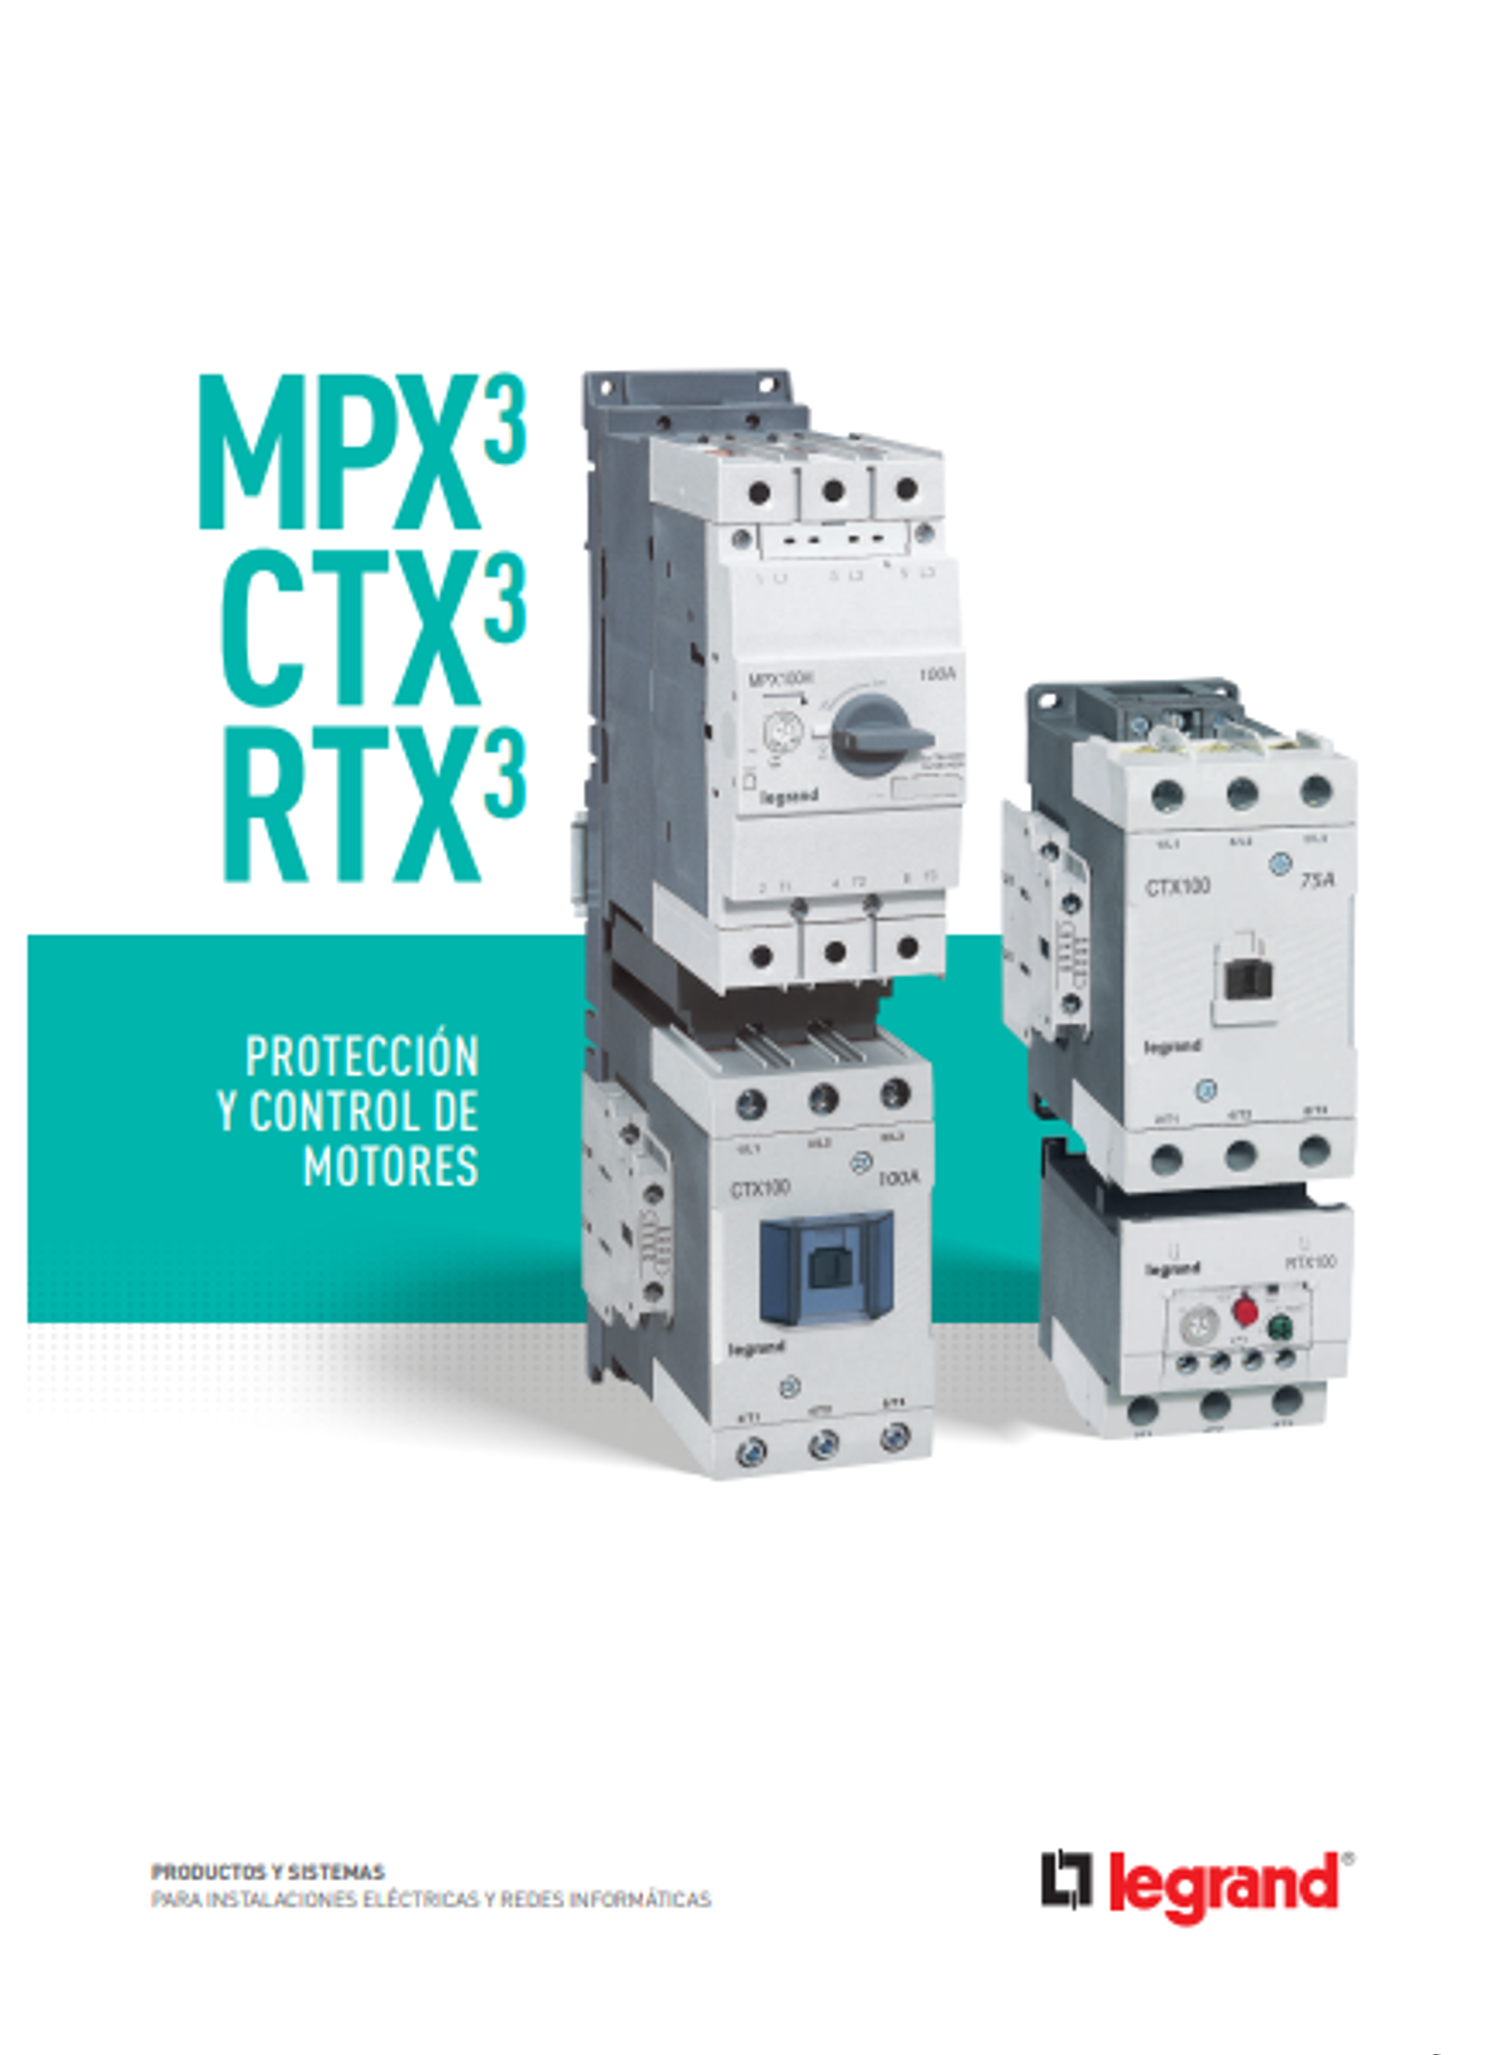 Protección y control de motores mpx3 - ctx3 - rtx3